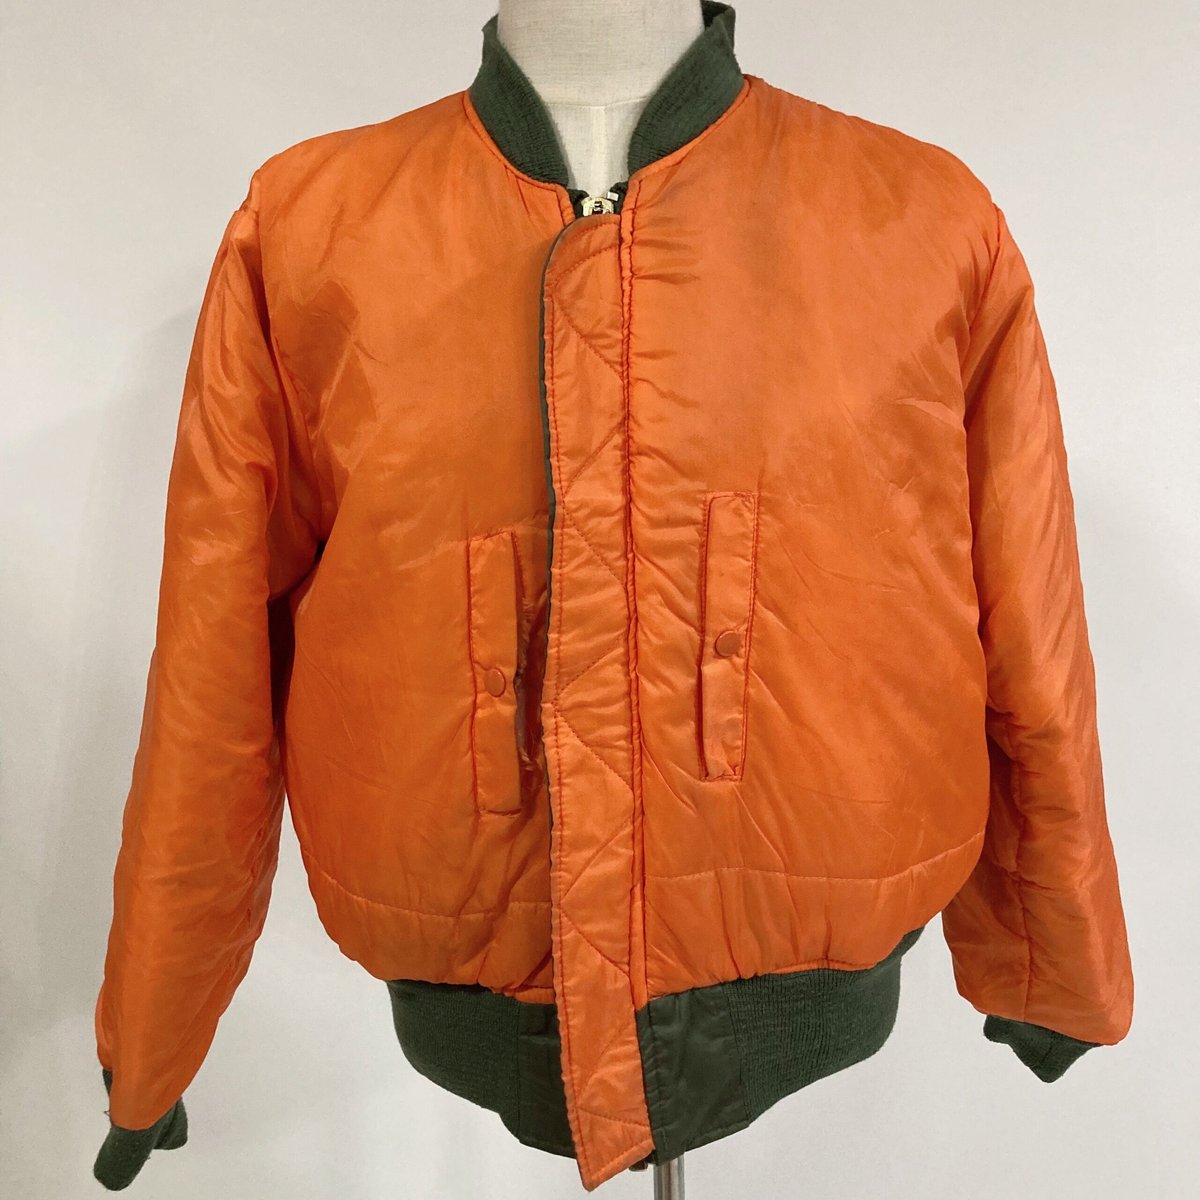 Rのジャケット一覧はこちらデルタ MA-1 刺繍 ナイロン フライトジャケット